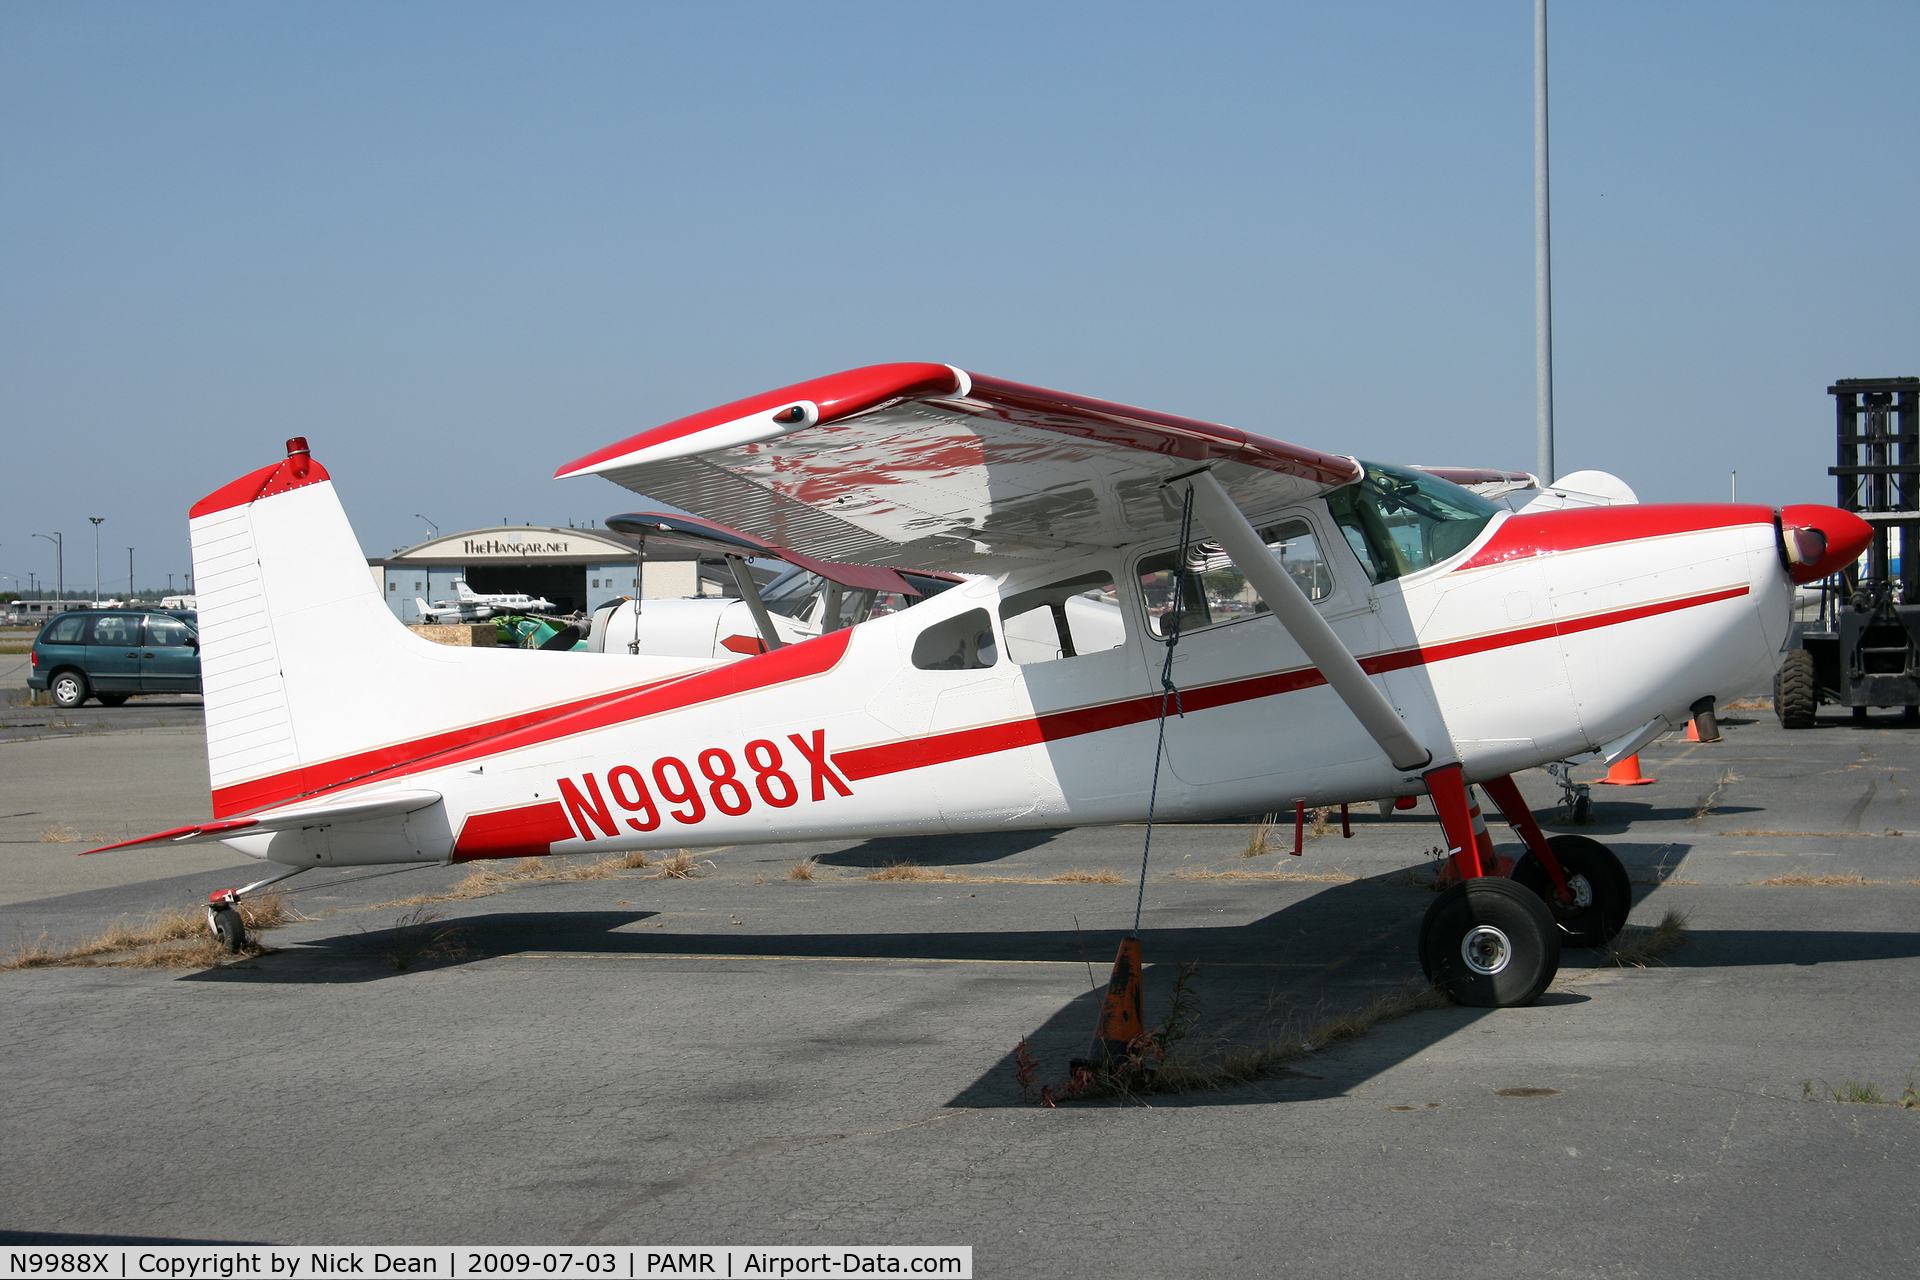 N9988X, 1961 Cessna 185 Skywagon C/N 1850188, PAMR